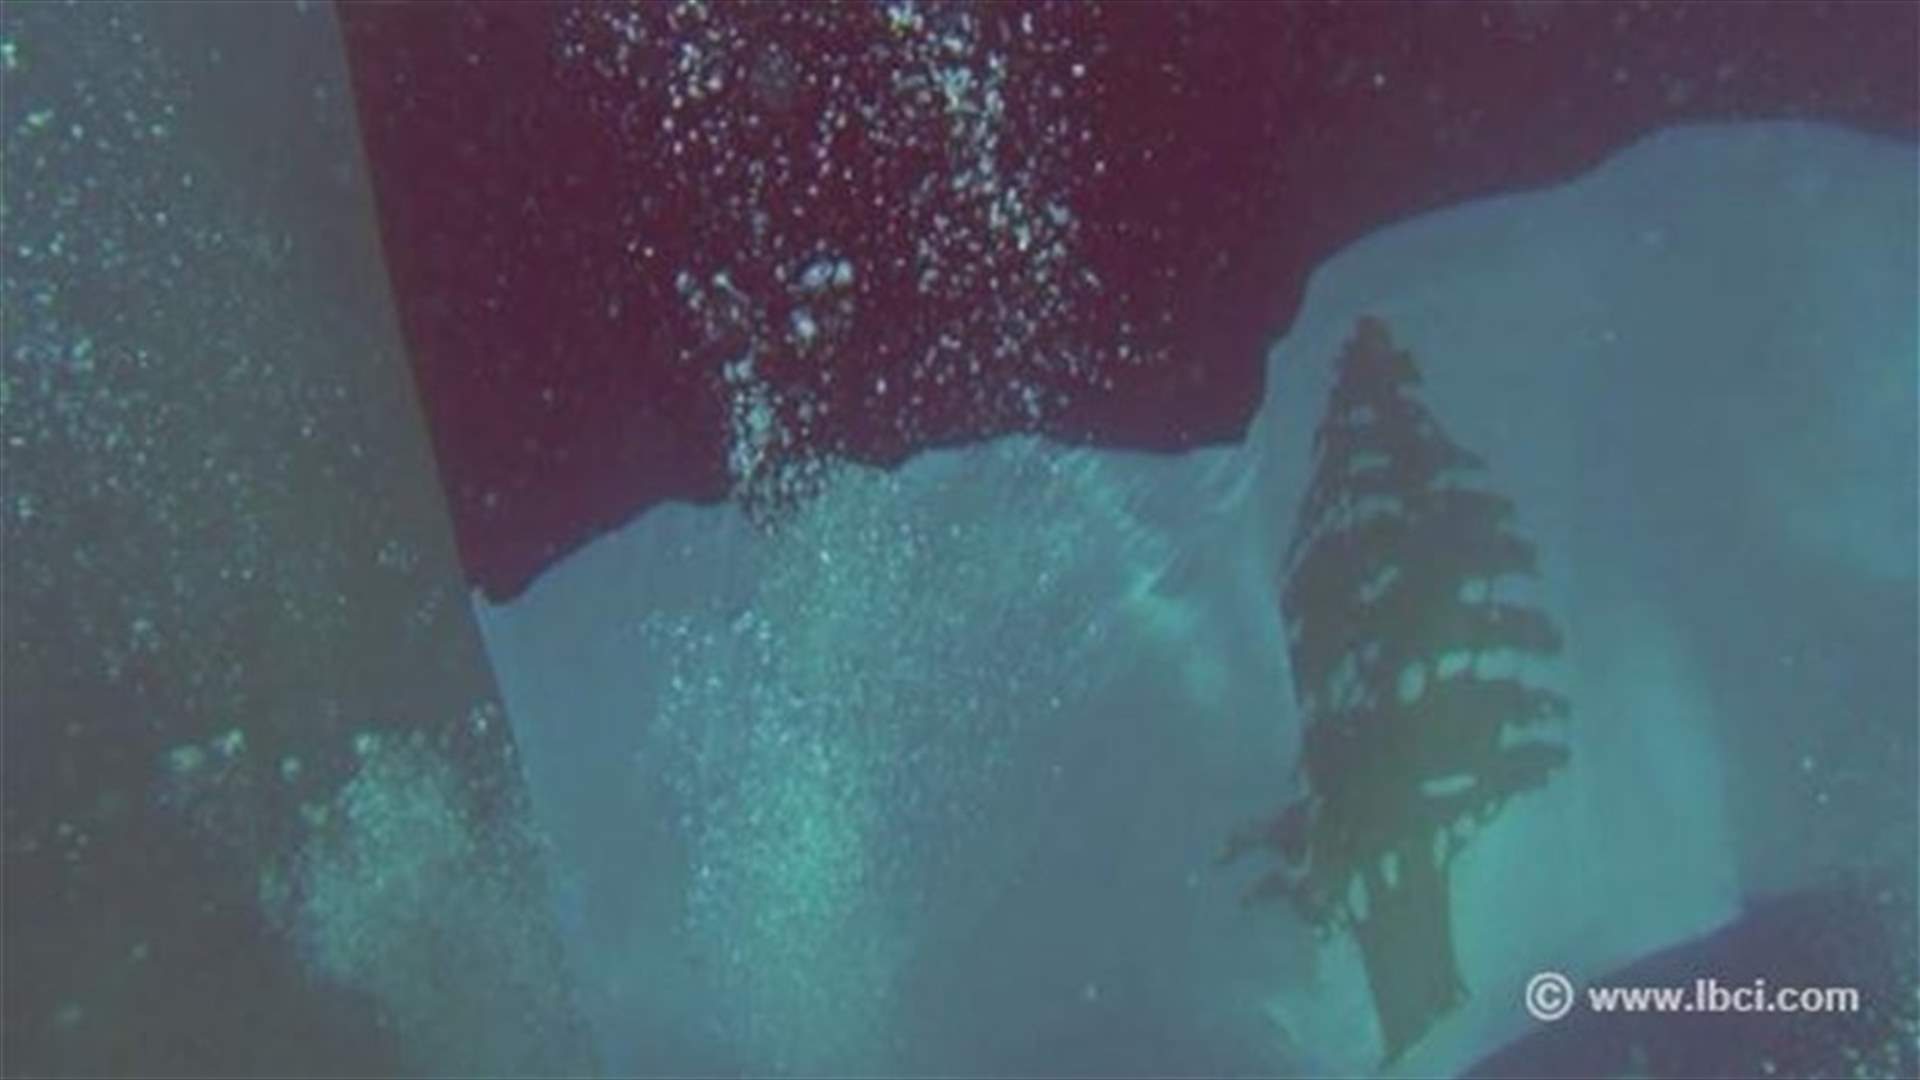 بالصور... العلم اللبناني تحت المياه في بحر شكا